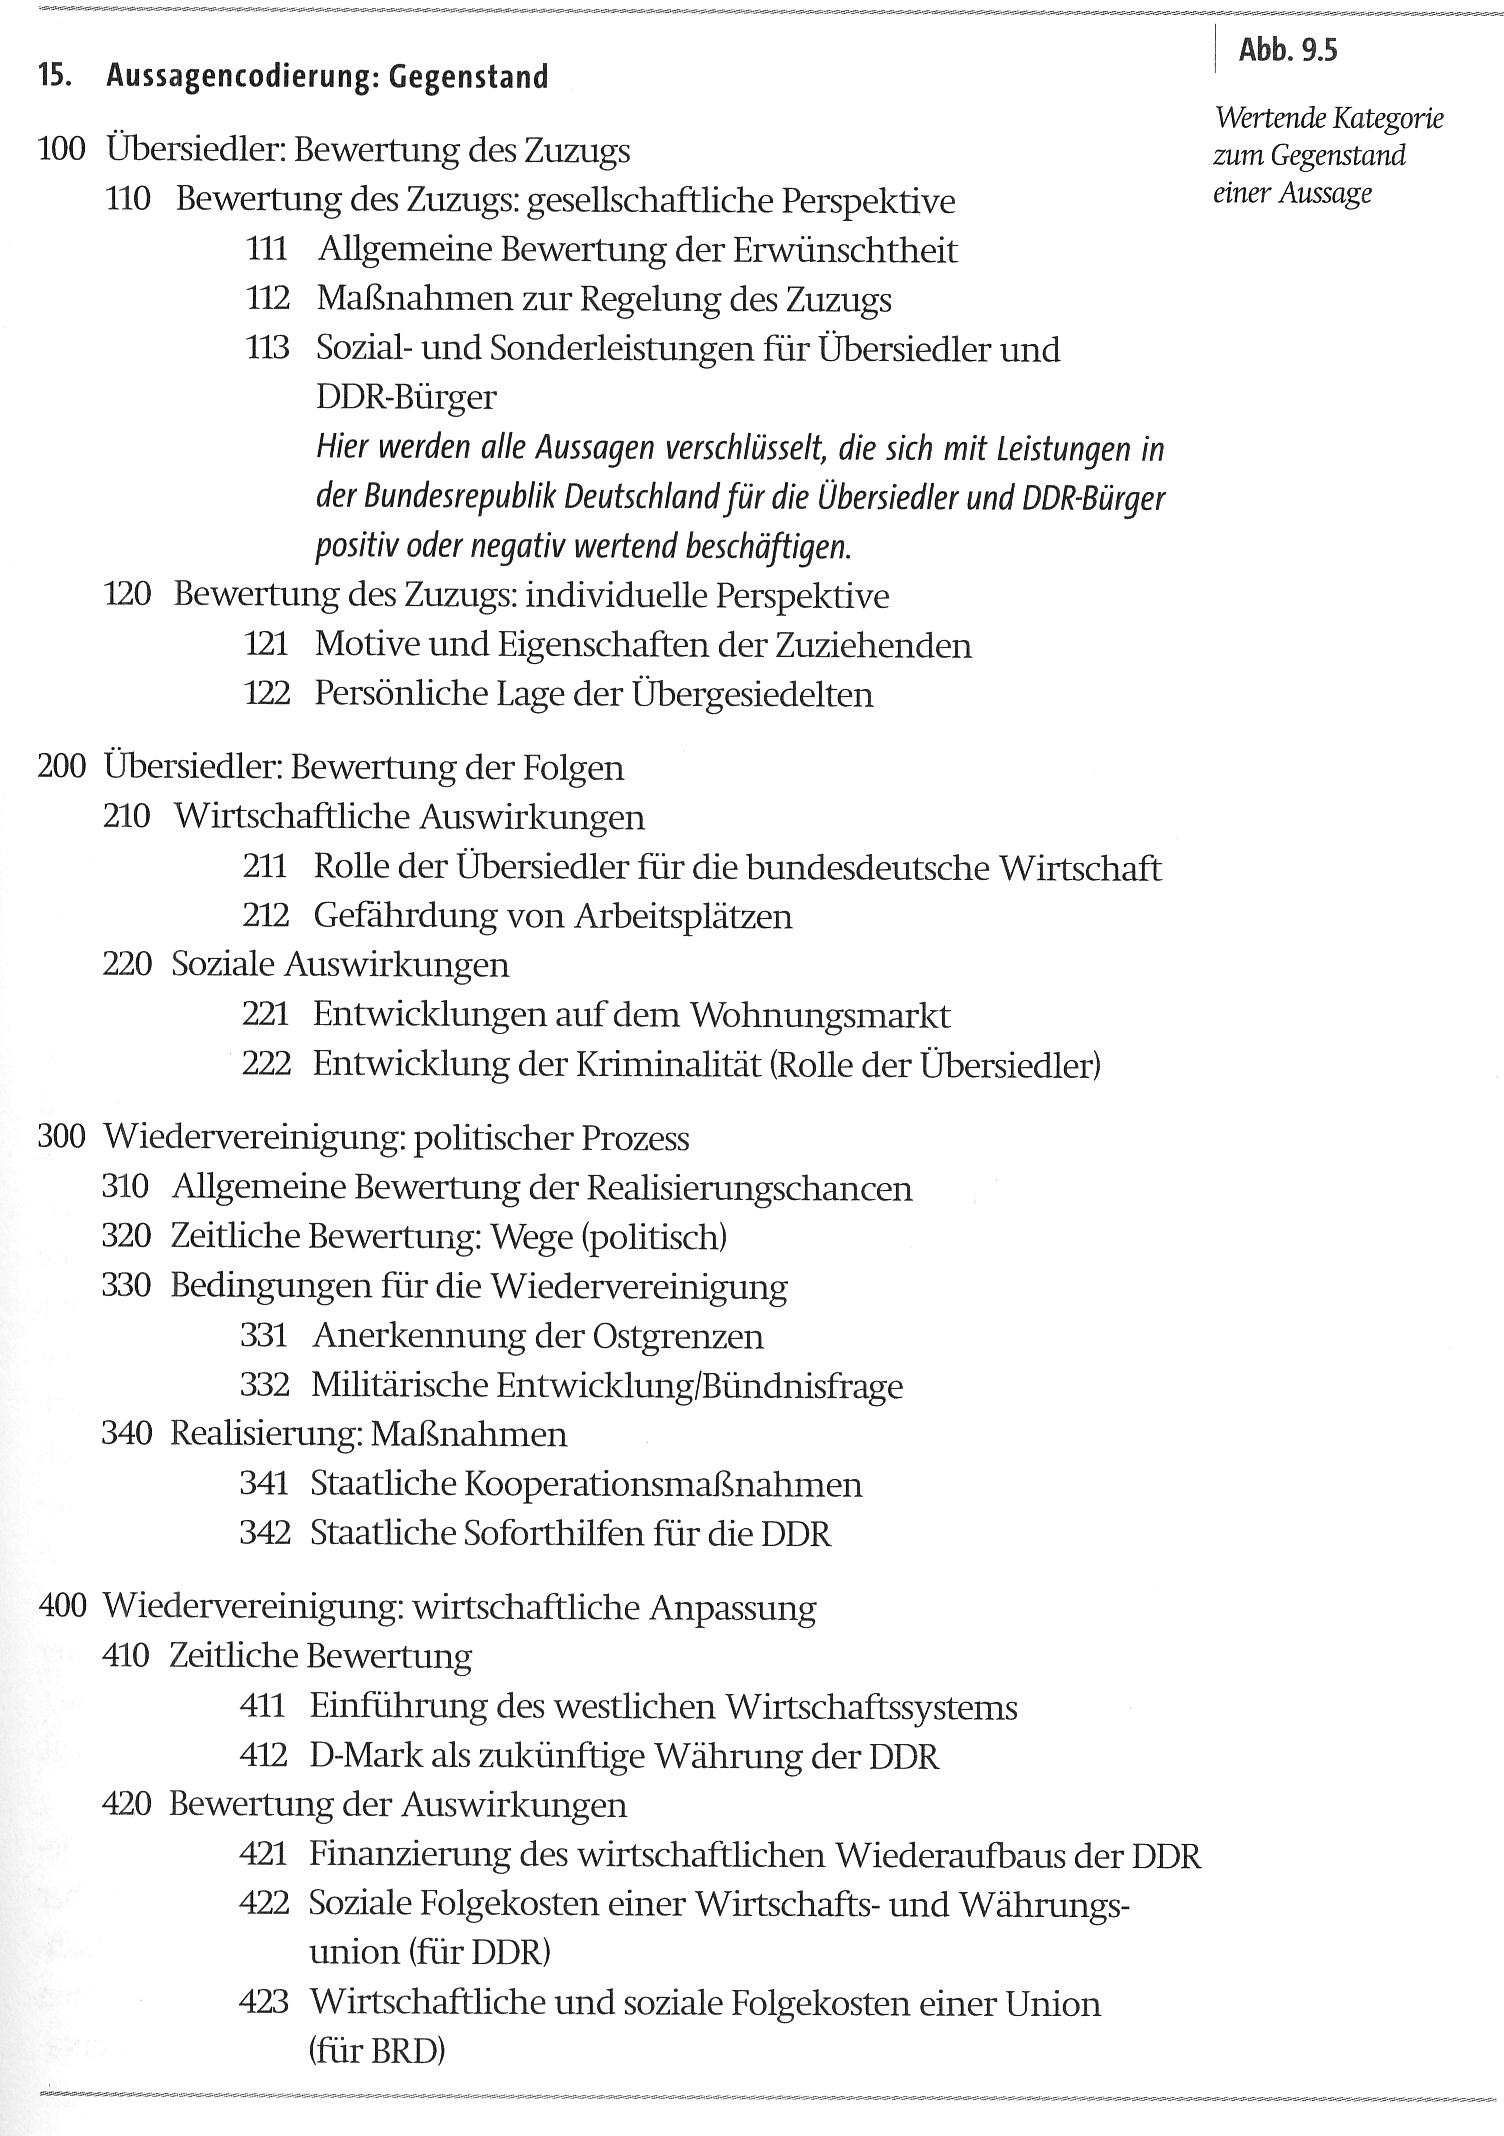 Auszug aus Rössler, Patrick (2005): Inhaltsanalyse. Konstanz: UVK.